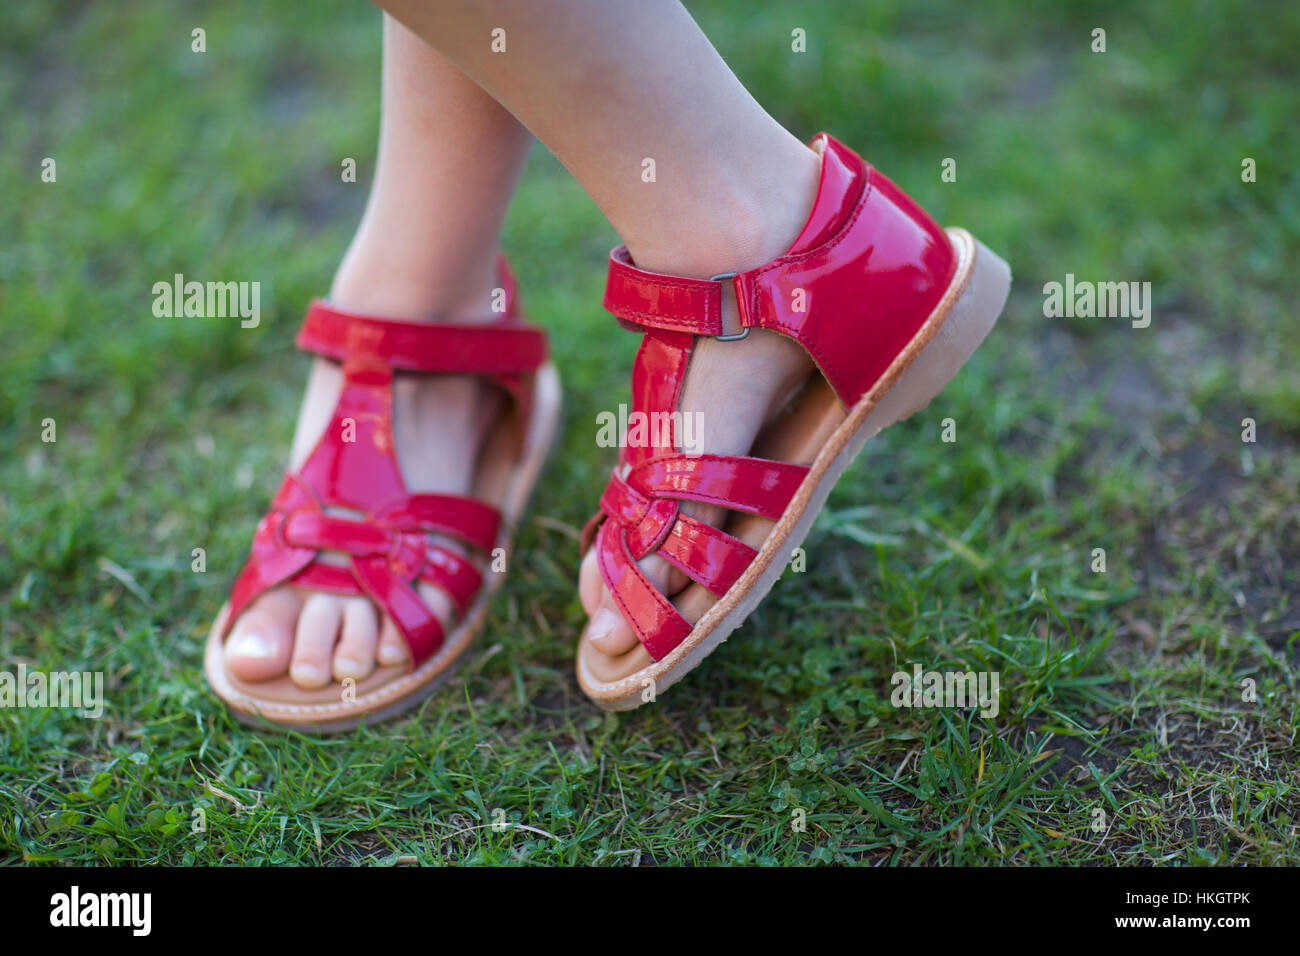 geringer Teil der Mädchen mit gekreuzten Beinen steht. Schuhe, Muster, Rasen, Kind. Stockfoto